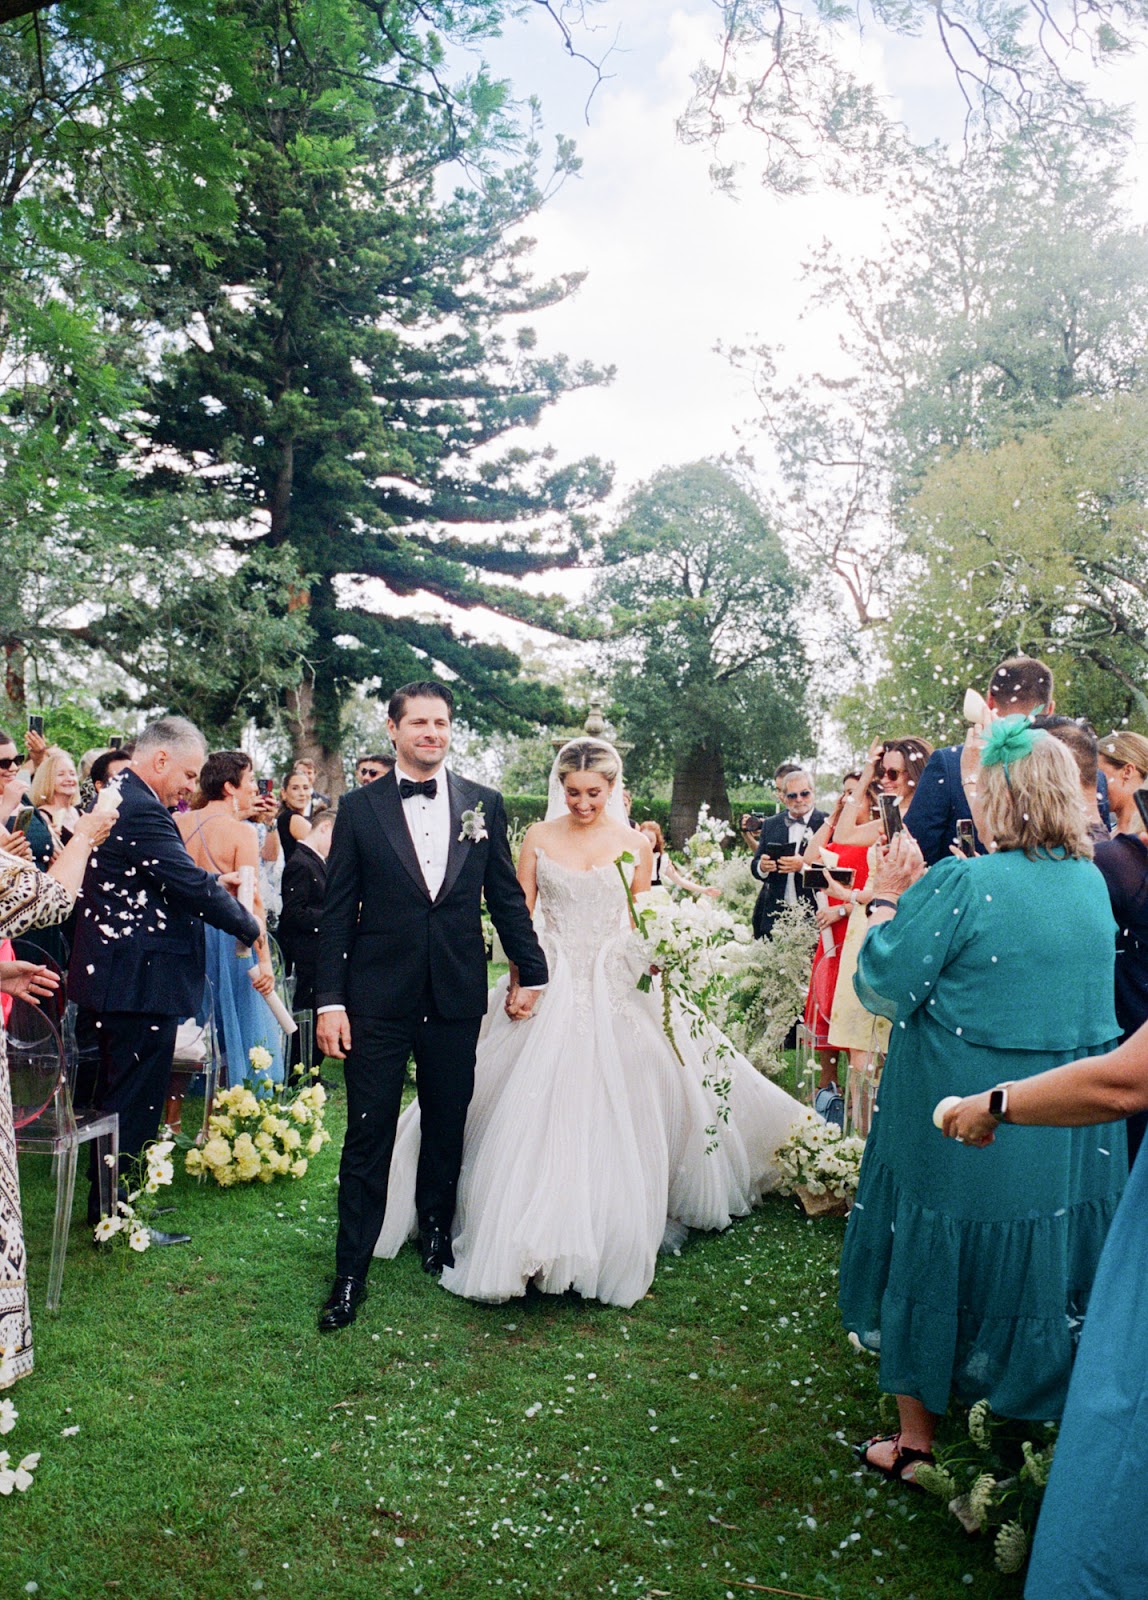 Leah Da Gloria Gets Wedded in Three of Her Own Custom Wedding Gowns